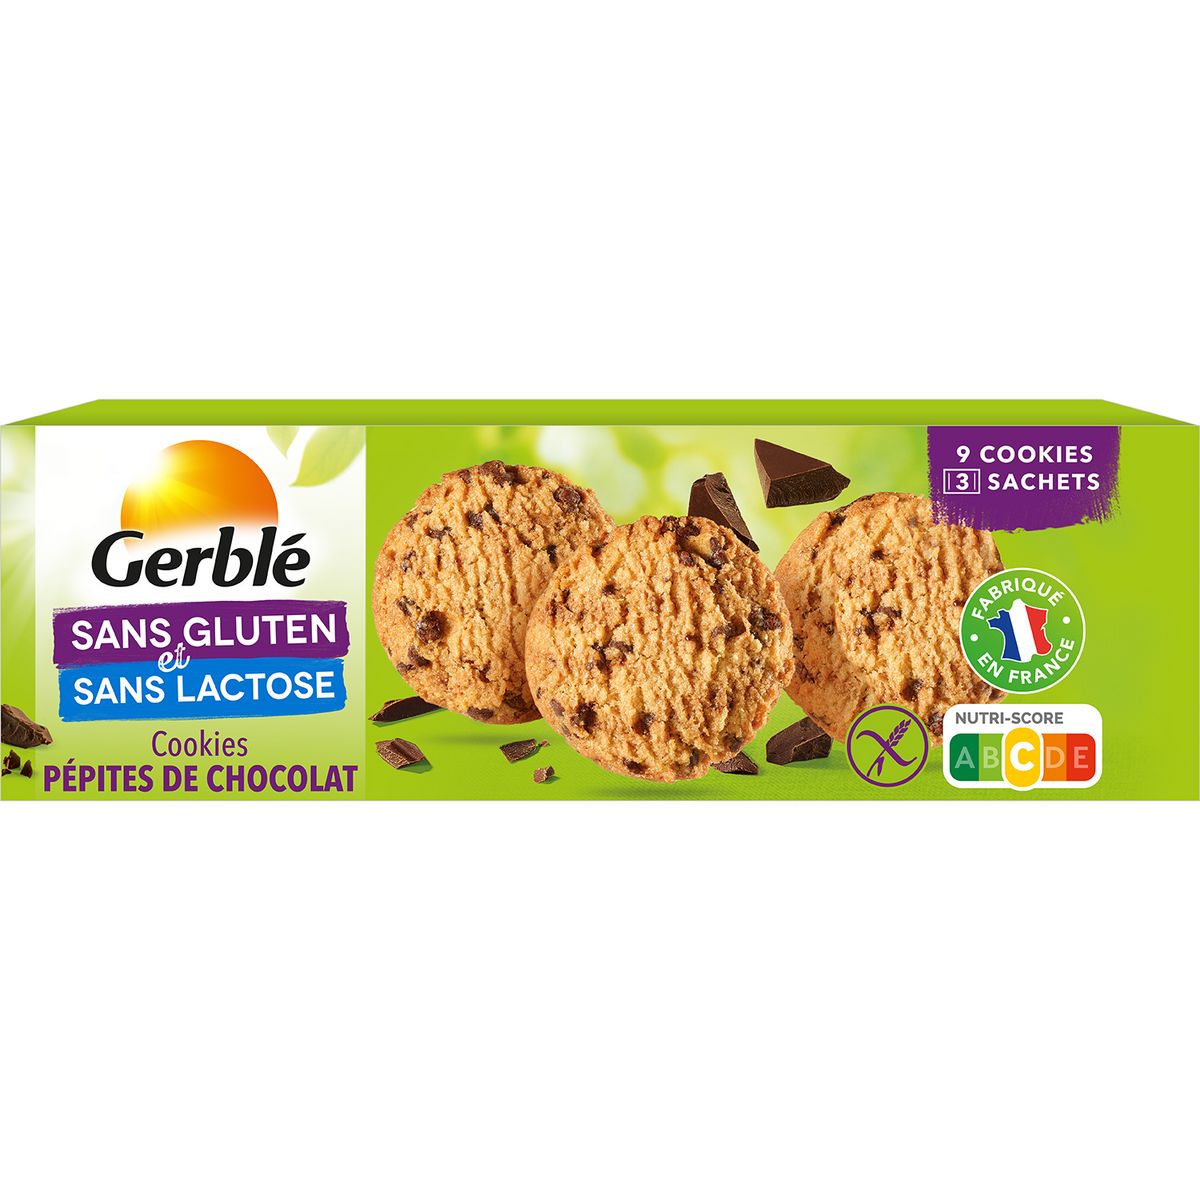 GERBLE Cookies pépites de chocolat sans gluten sachets fraîcheur 3x3 cookies 150g